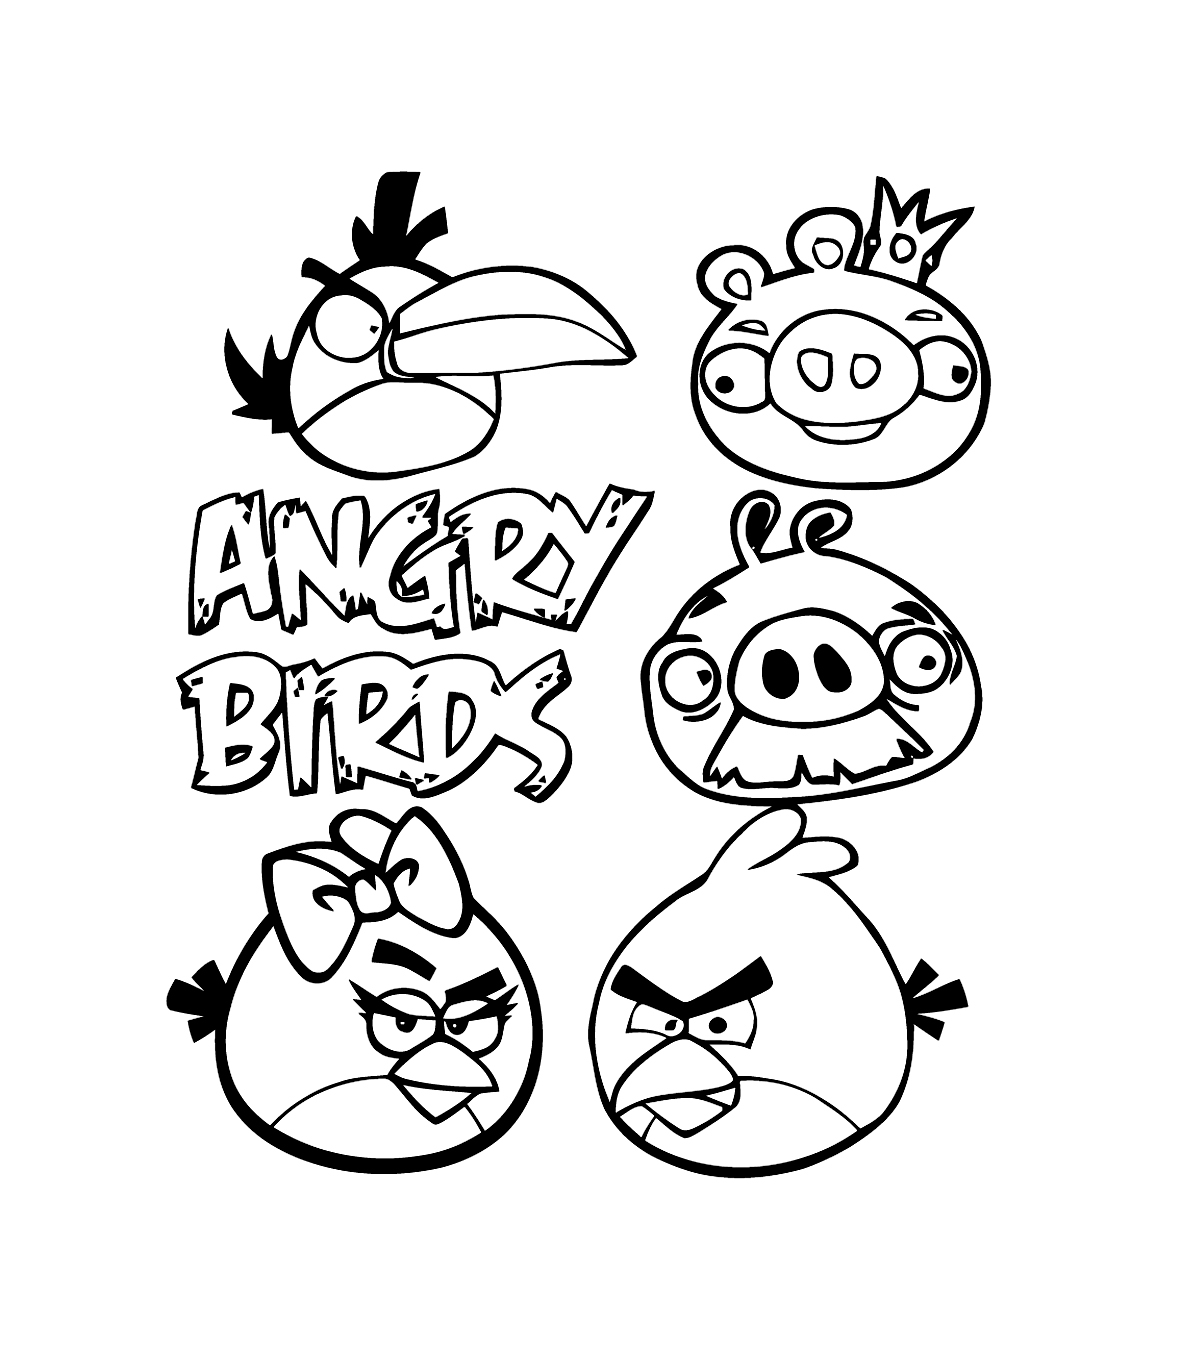 Simple coloriage de Angry birds pour enfants